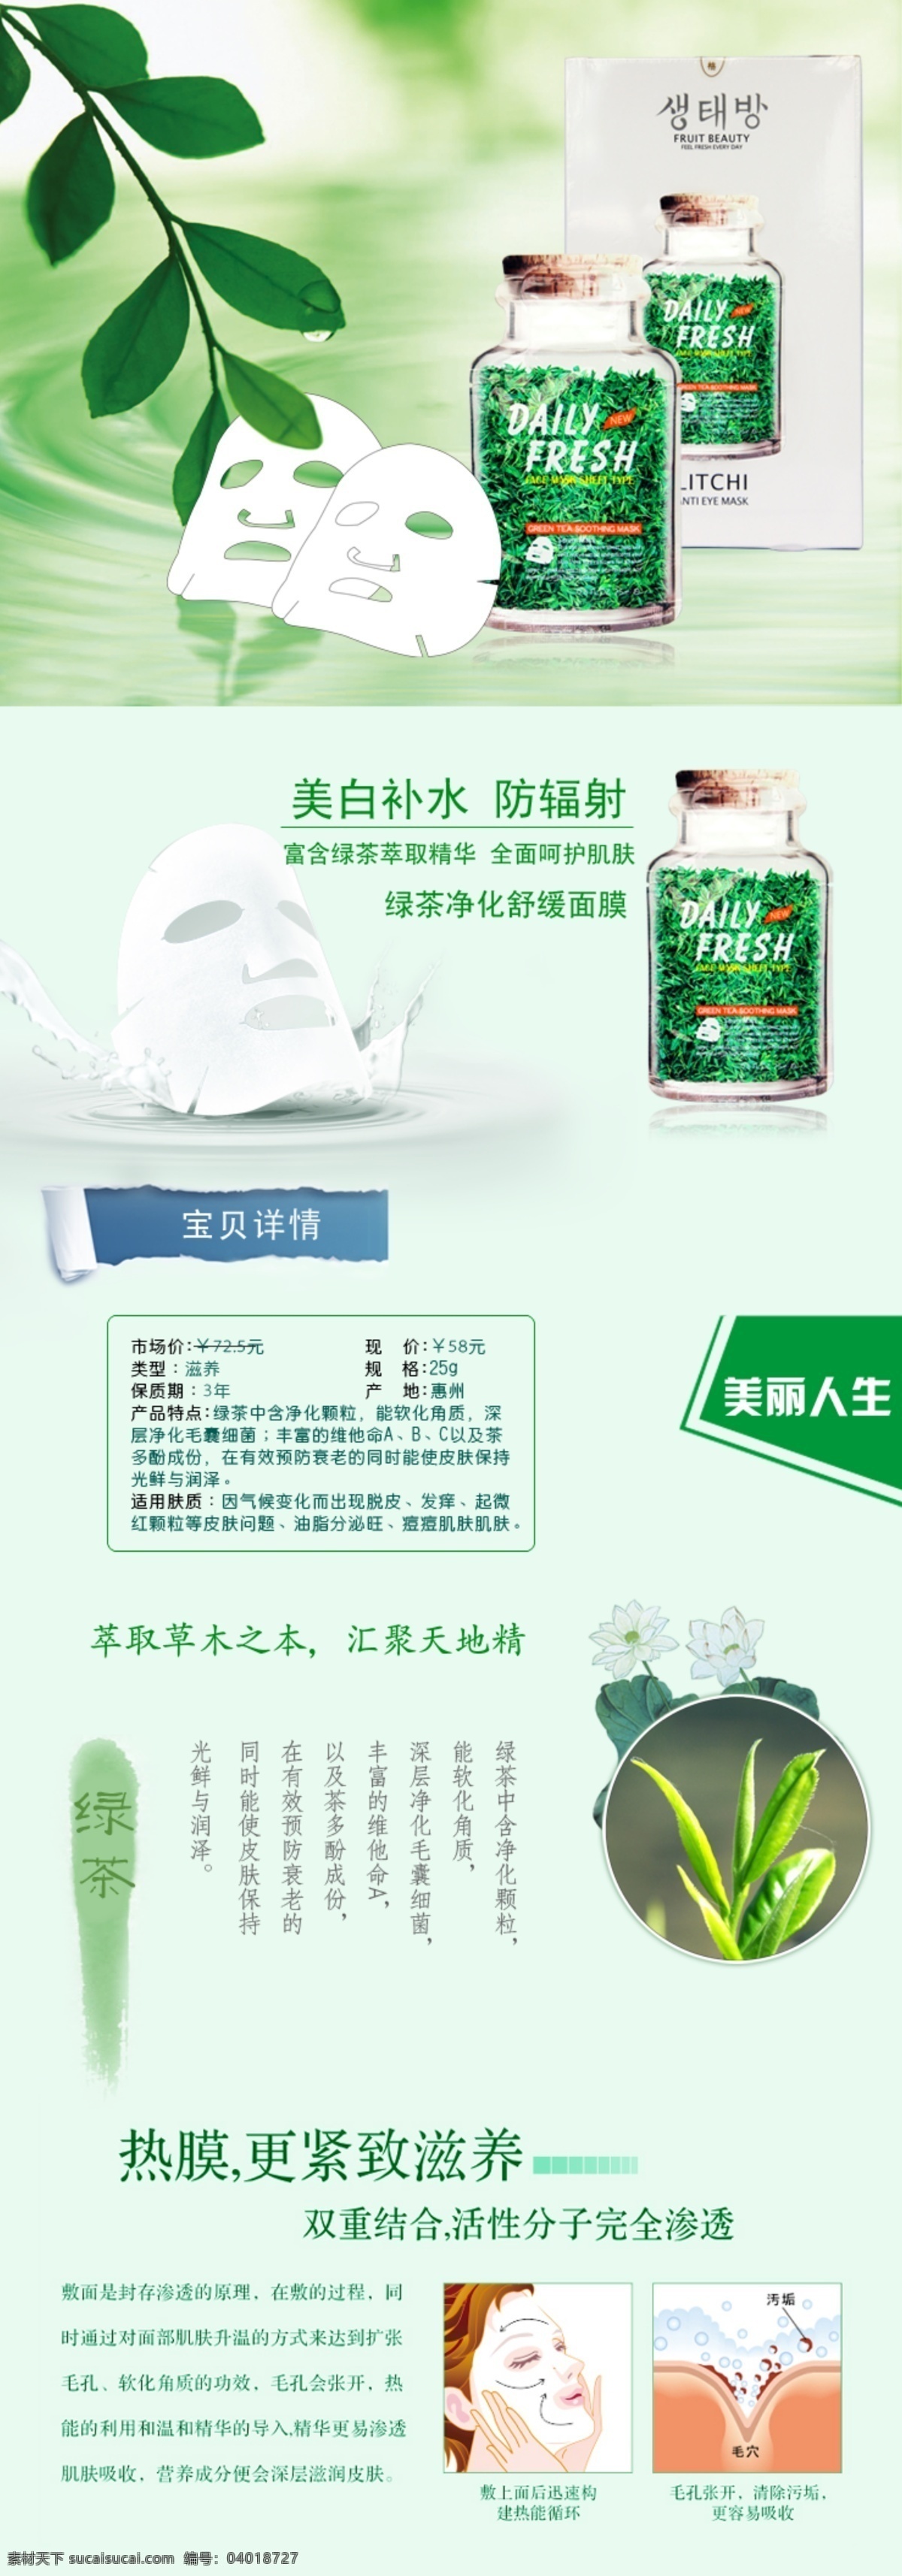 绿茶 面膜 广告 茶叶 绿叶 淘宝描述 网页模板 源文件 中文模版 绿茶面膜广告 绿茶面膜 面膜描述 牛奶面膜 淘宝素材 其他淘宝素材